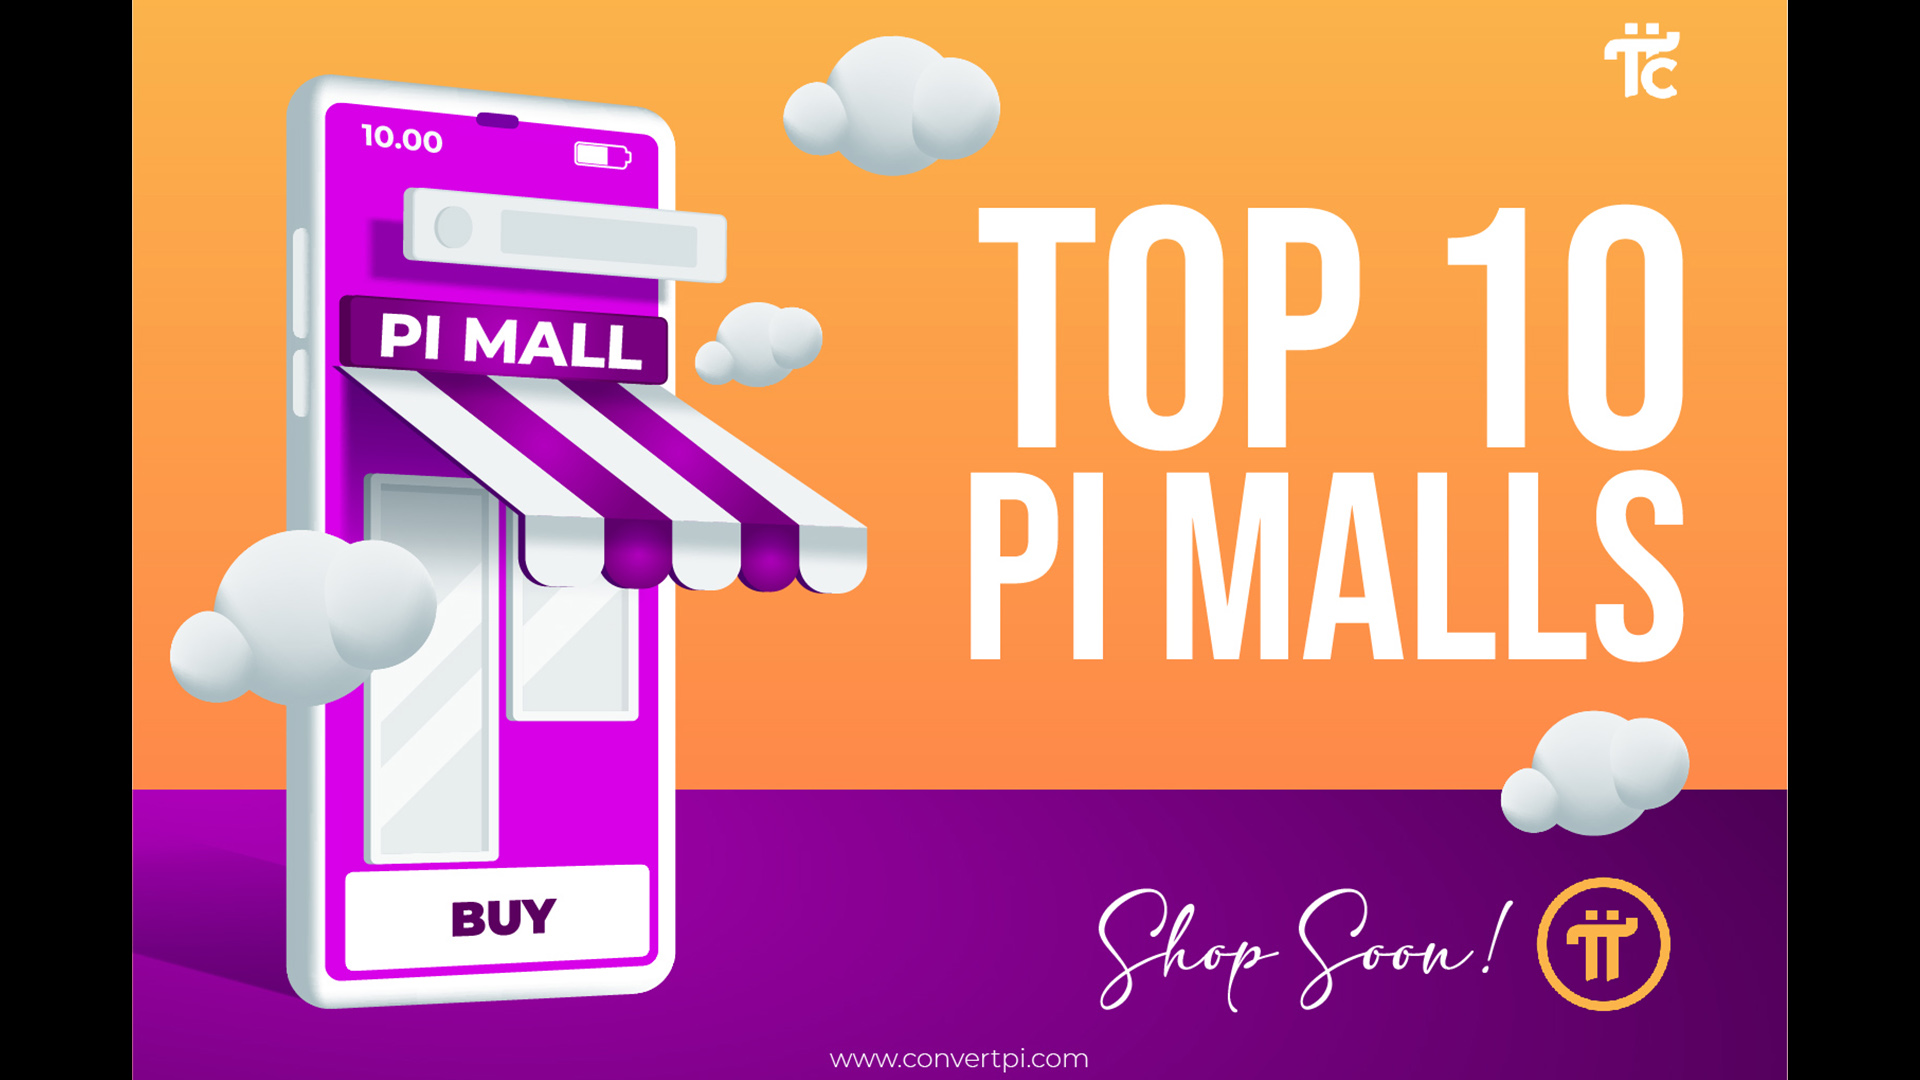 pi mall